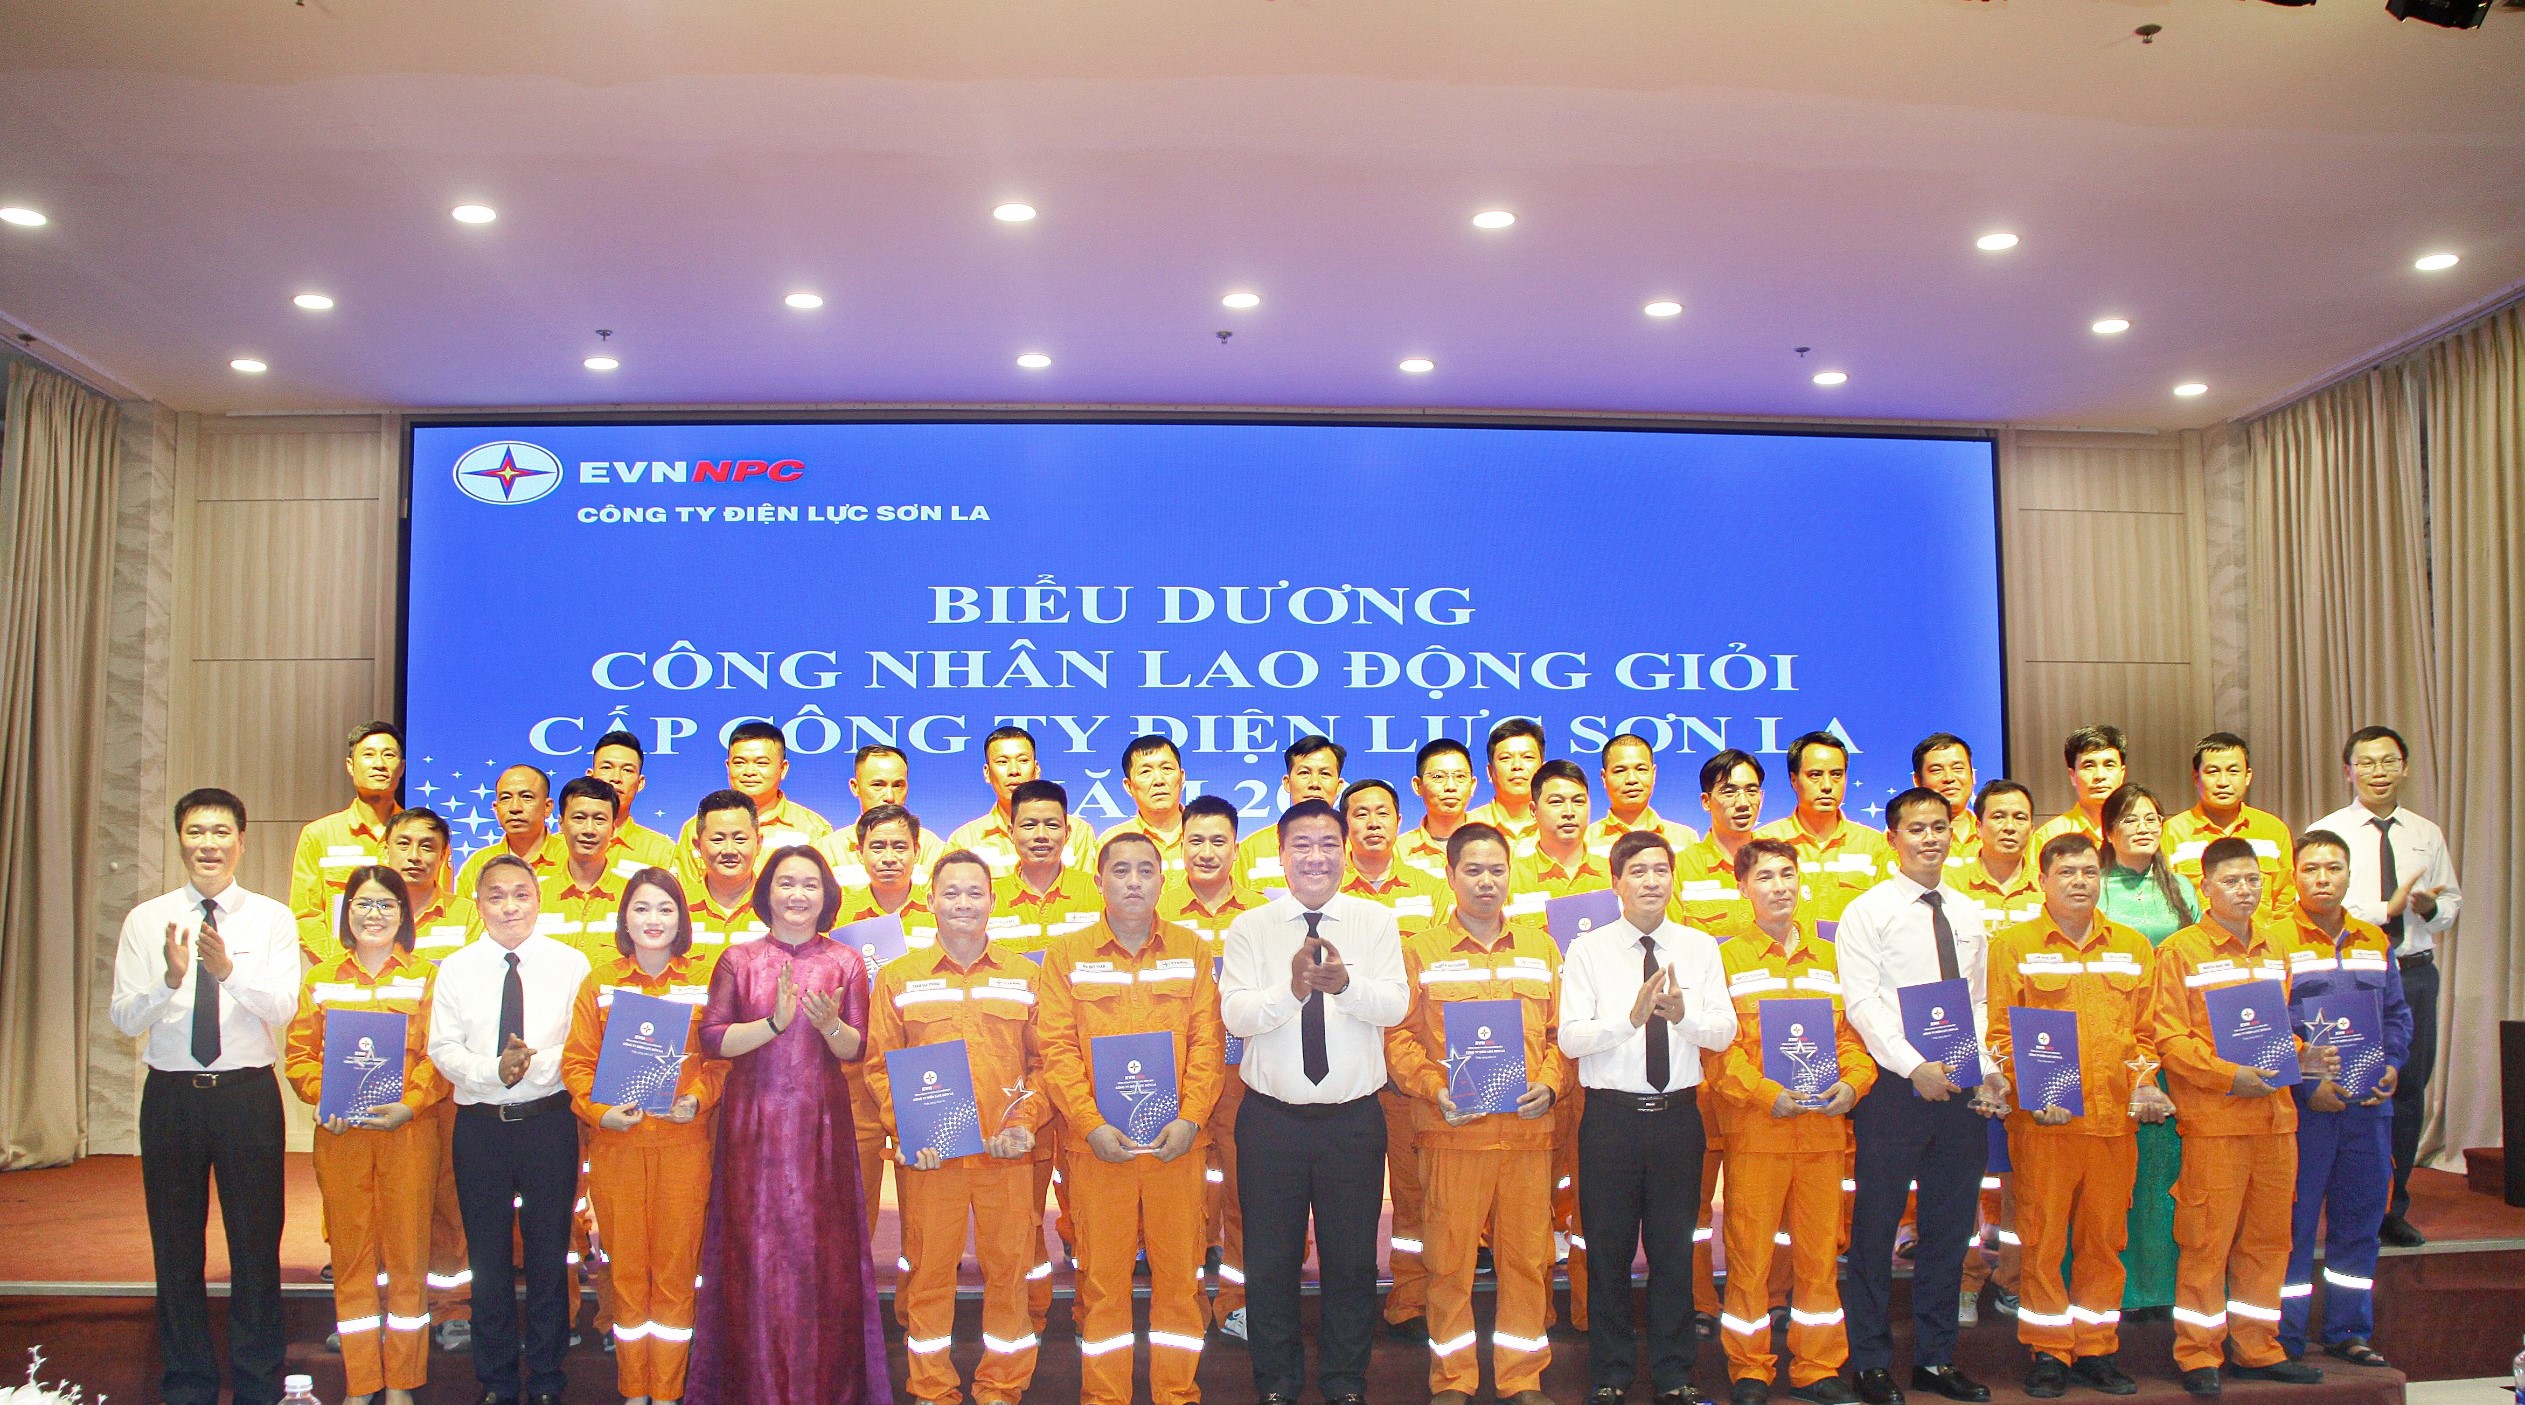  PC Sơn La: 35 Công nhân Lao động giỏi cấp Công ty được vinh danh  